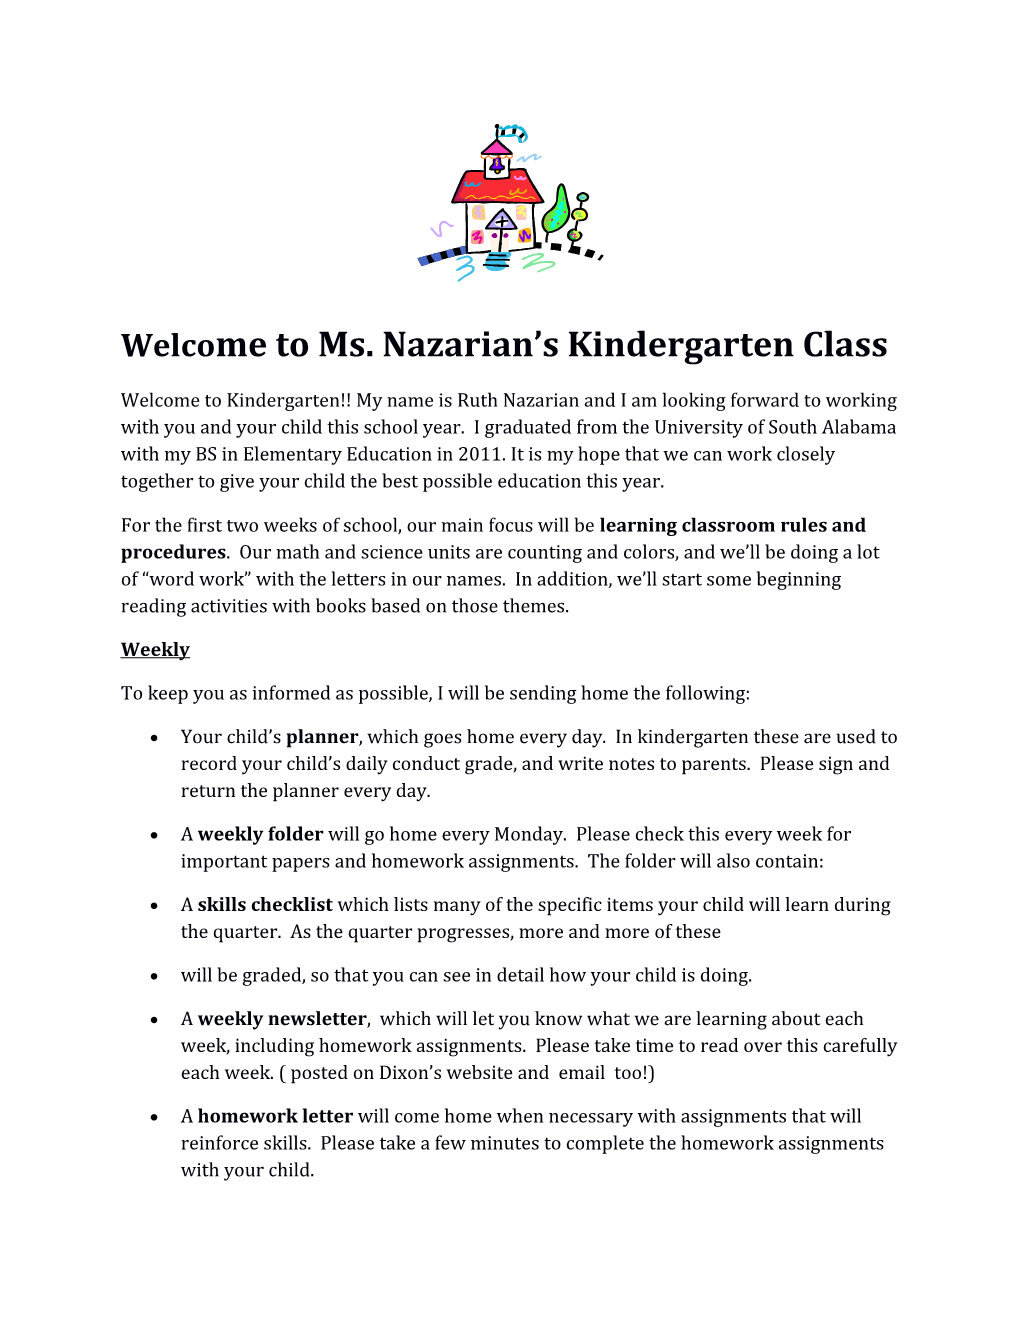 Welcome to Ms. Nazarian S Kindergarten Class